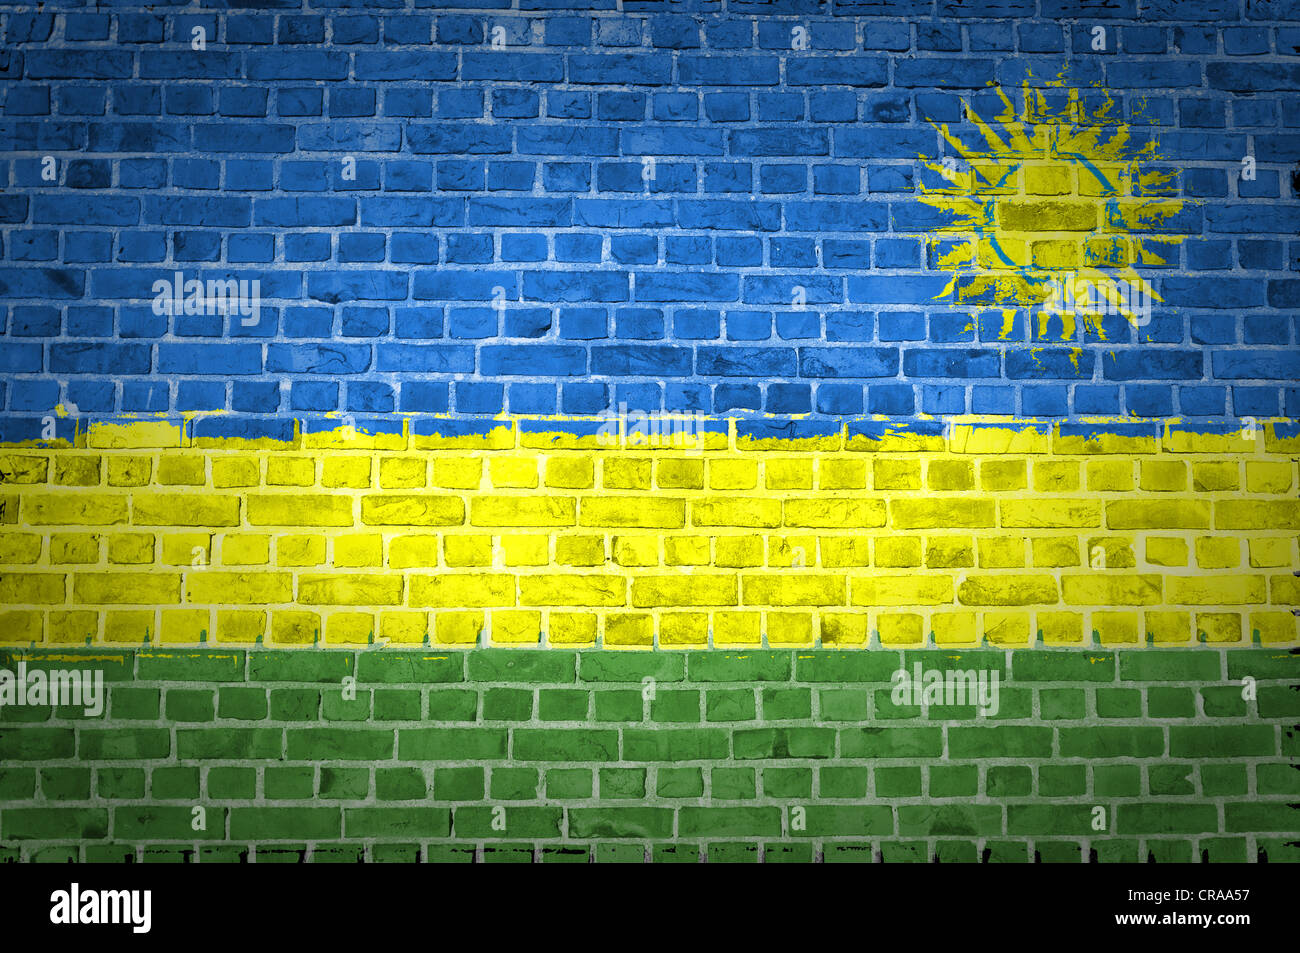 Ein Bild von der Ruanda-Fahne gemalt auf eine Mauer in innerstädtischer Lage Stockfoto